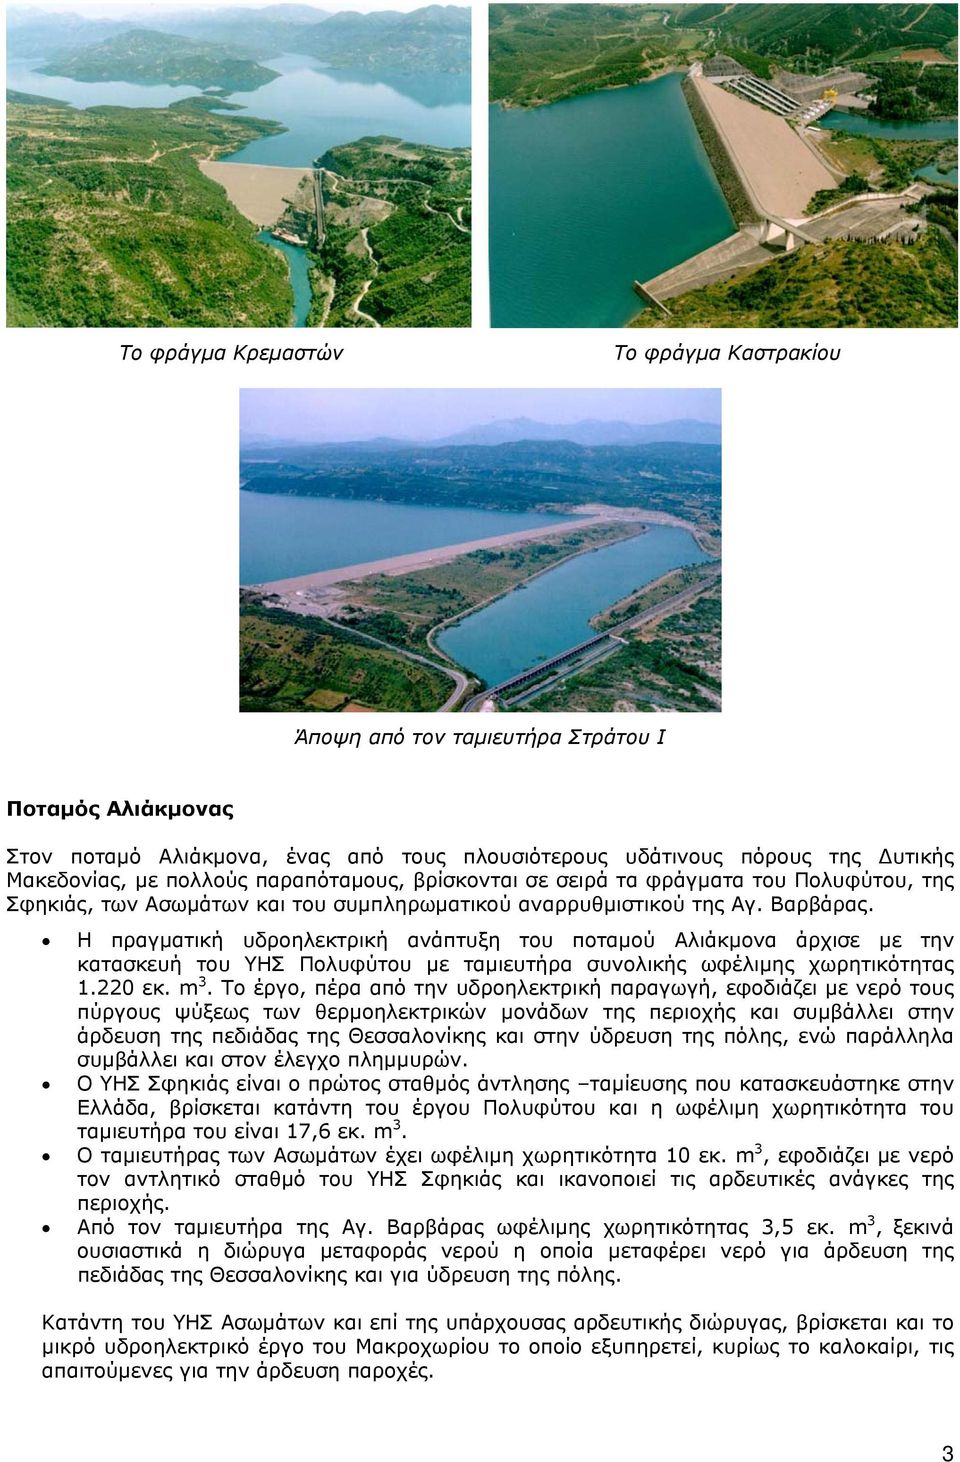 Η πραγματική υδροηλεκτρική ανάπτυξη του ποταμού Αλιάκμονα άρχισε με την κατασκευή του ΥΗΣ Πολυφύτου με ταμιευτήρα συνολικής ωφέλιμης χωρητικότητας 1.220 εκ. m 3.